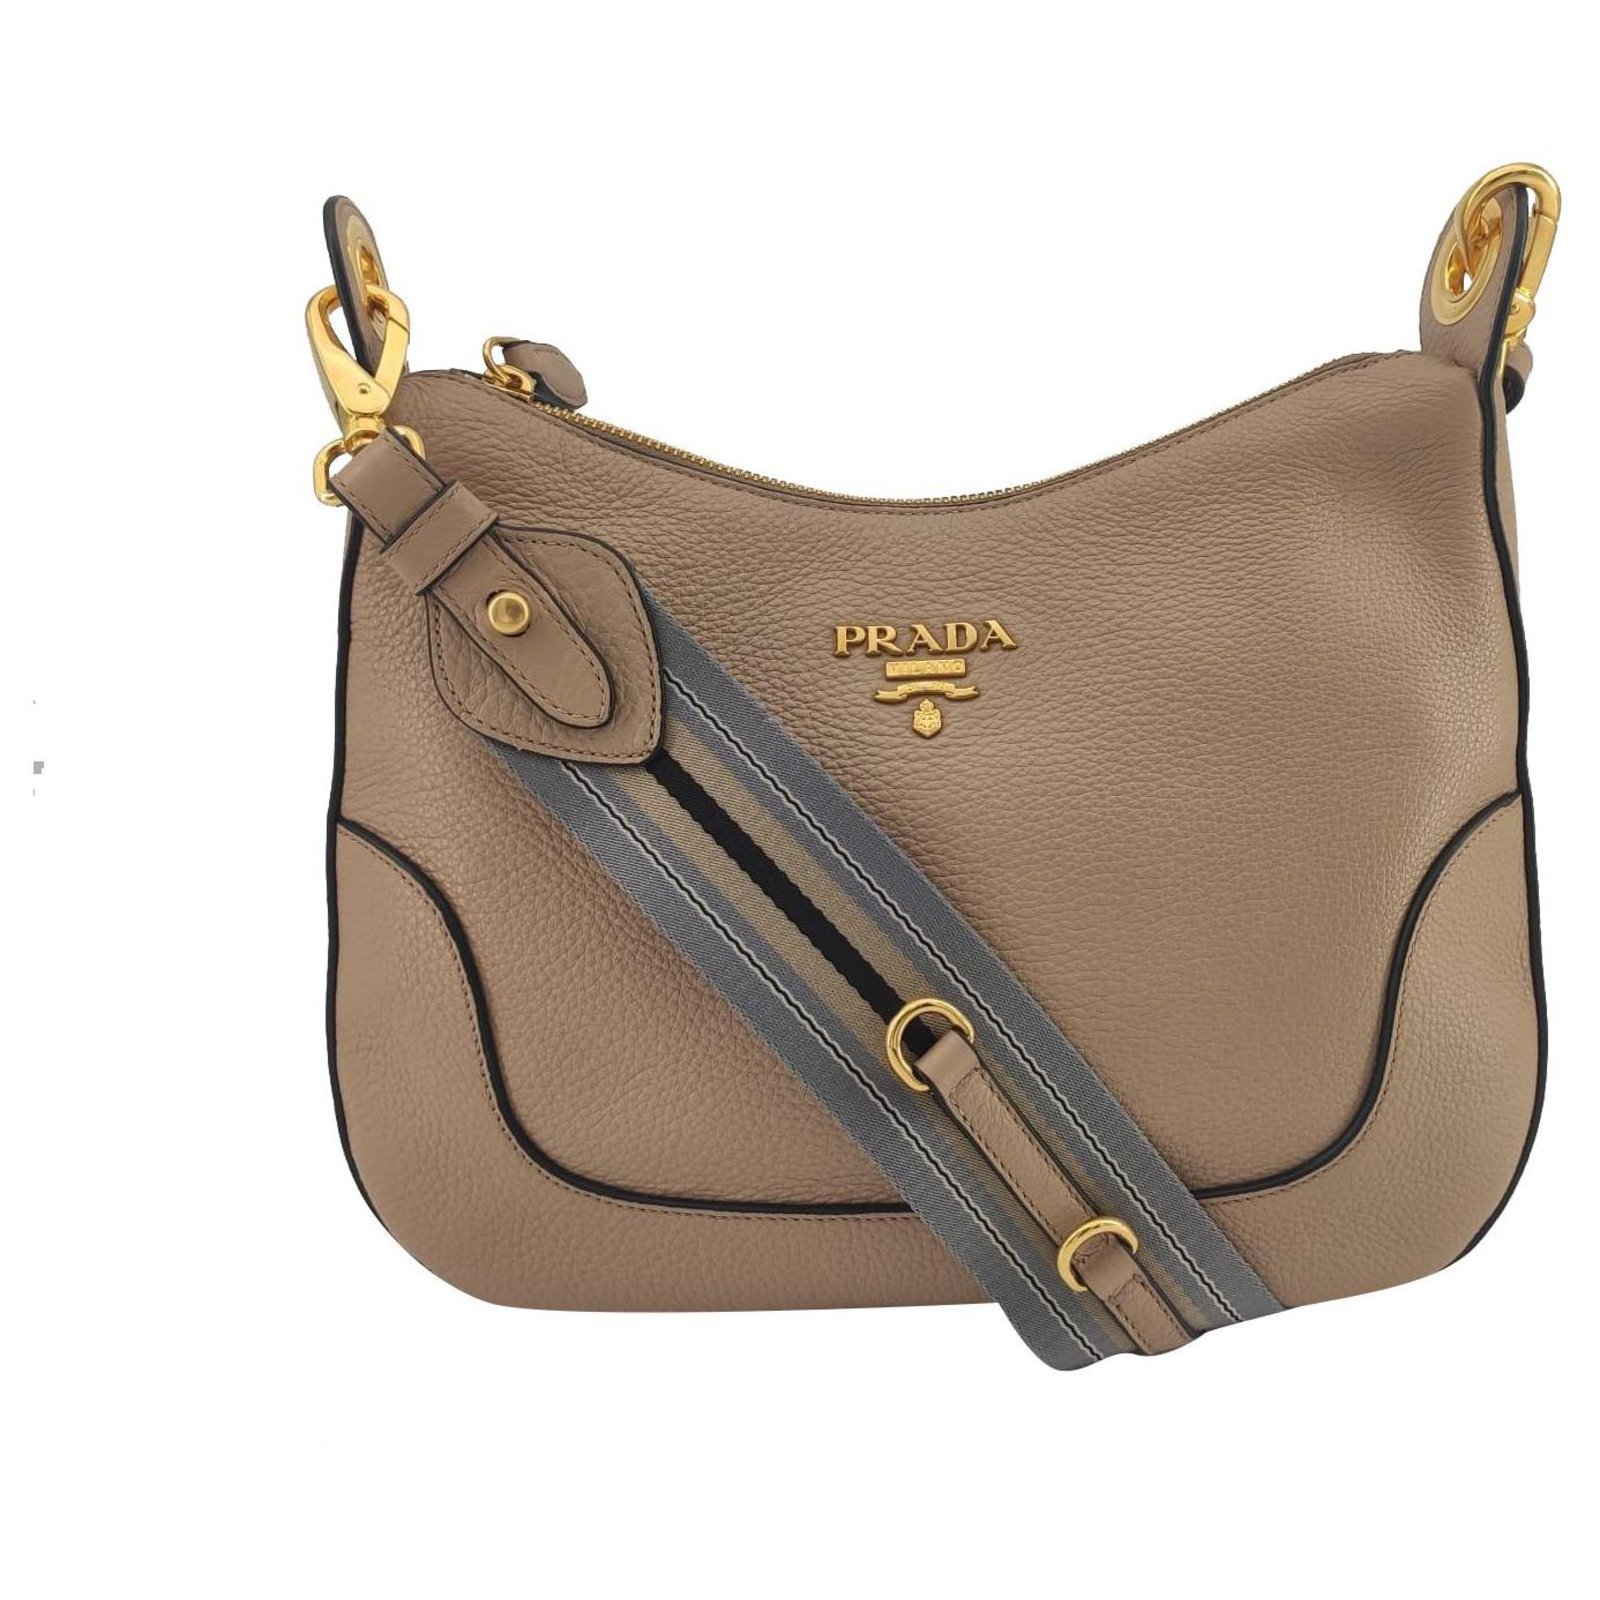 Prada - Authenticated Saffiano Handbag - Leather Camel Plain for Women, Very Good Condition